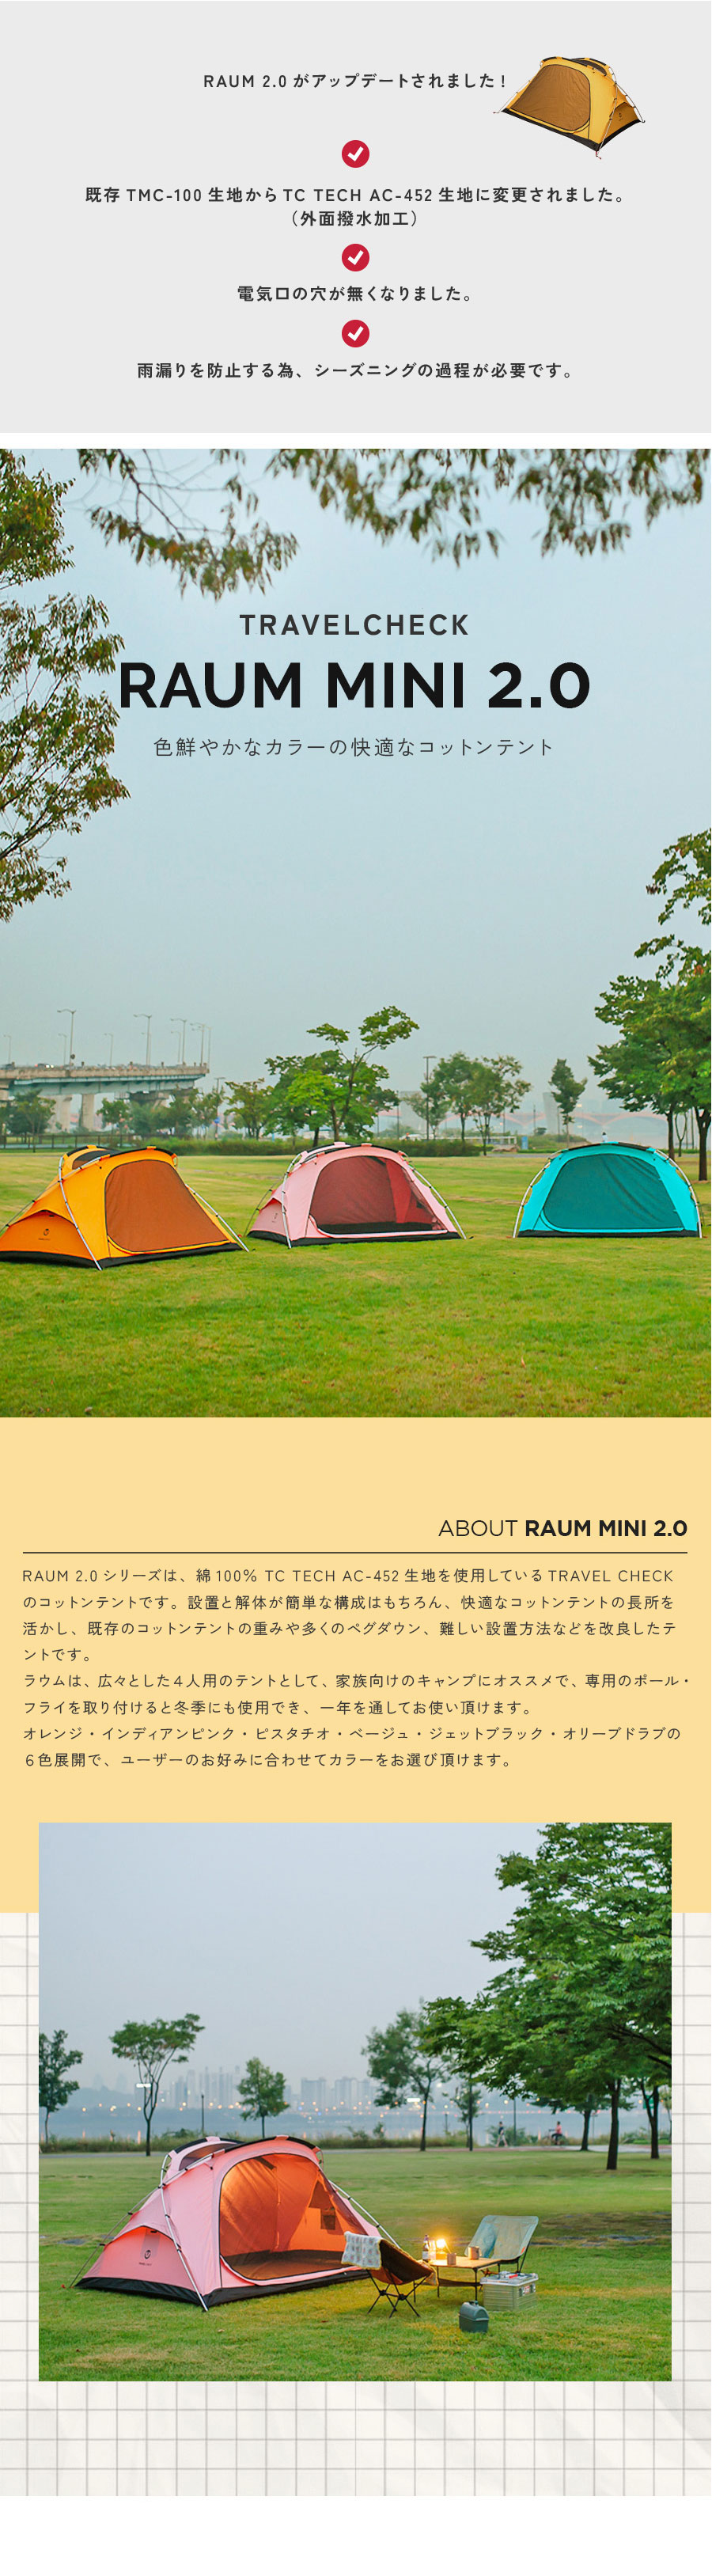 TRAVEL CHECK RAUM MINI 2.0 / トラベルチェック ラウム ミニ テント